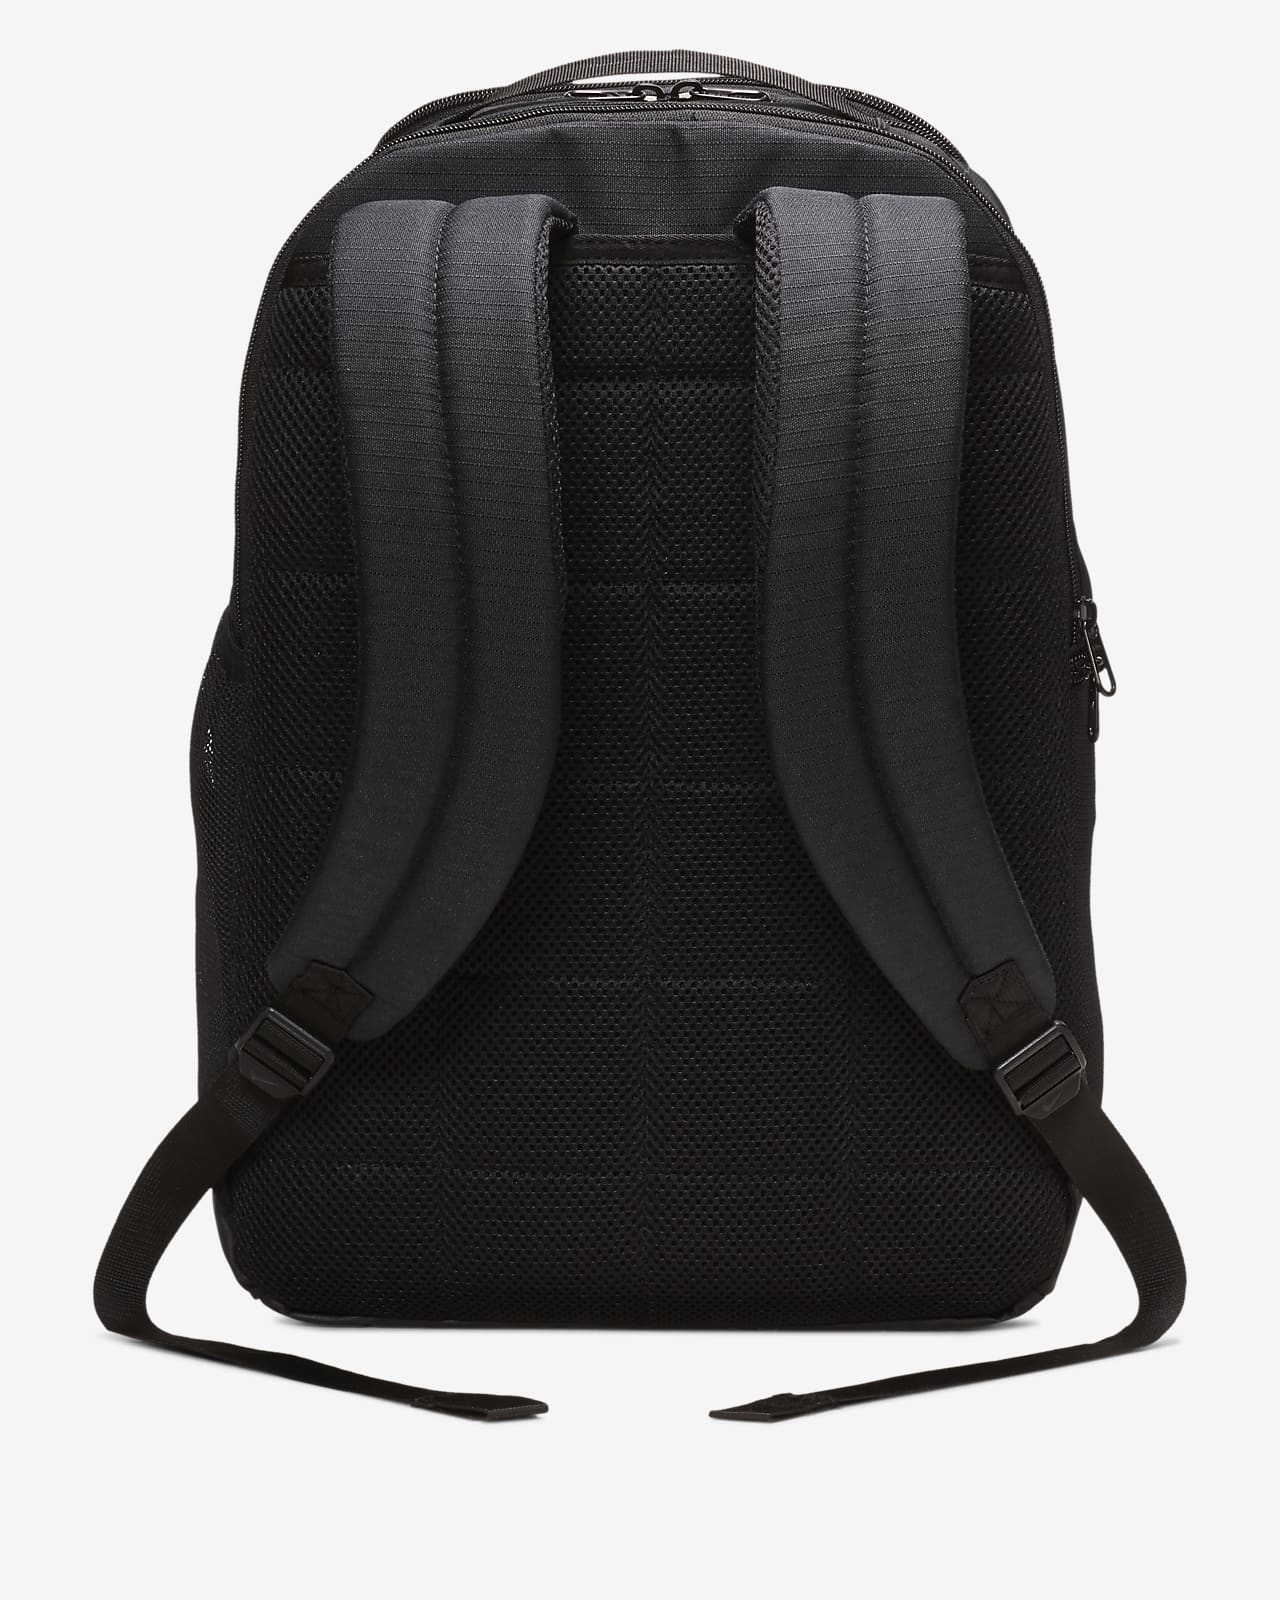 Nike Brasilia Training Backpack (Medium 